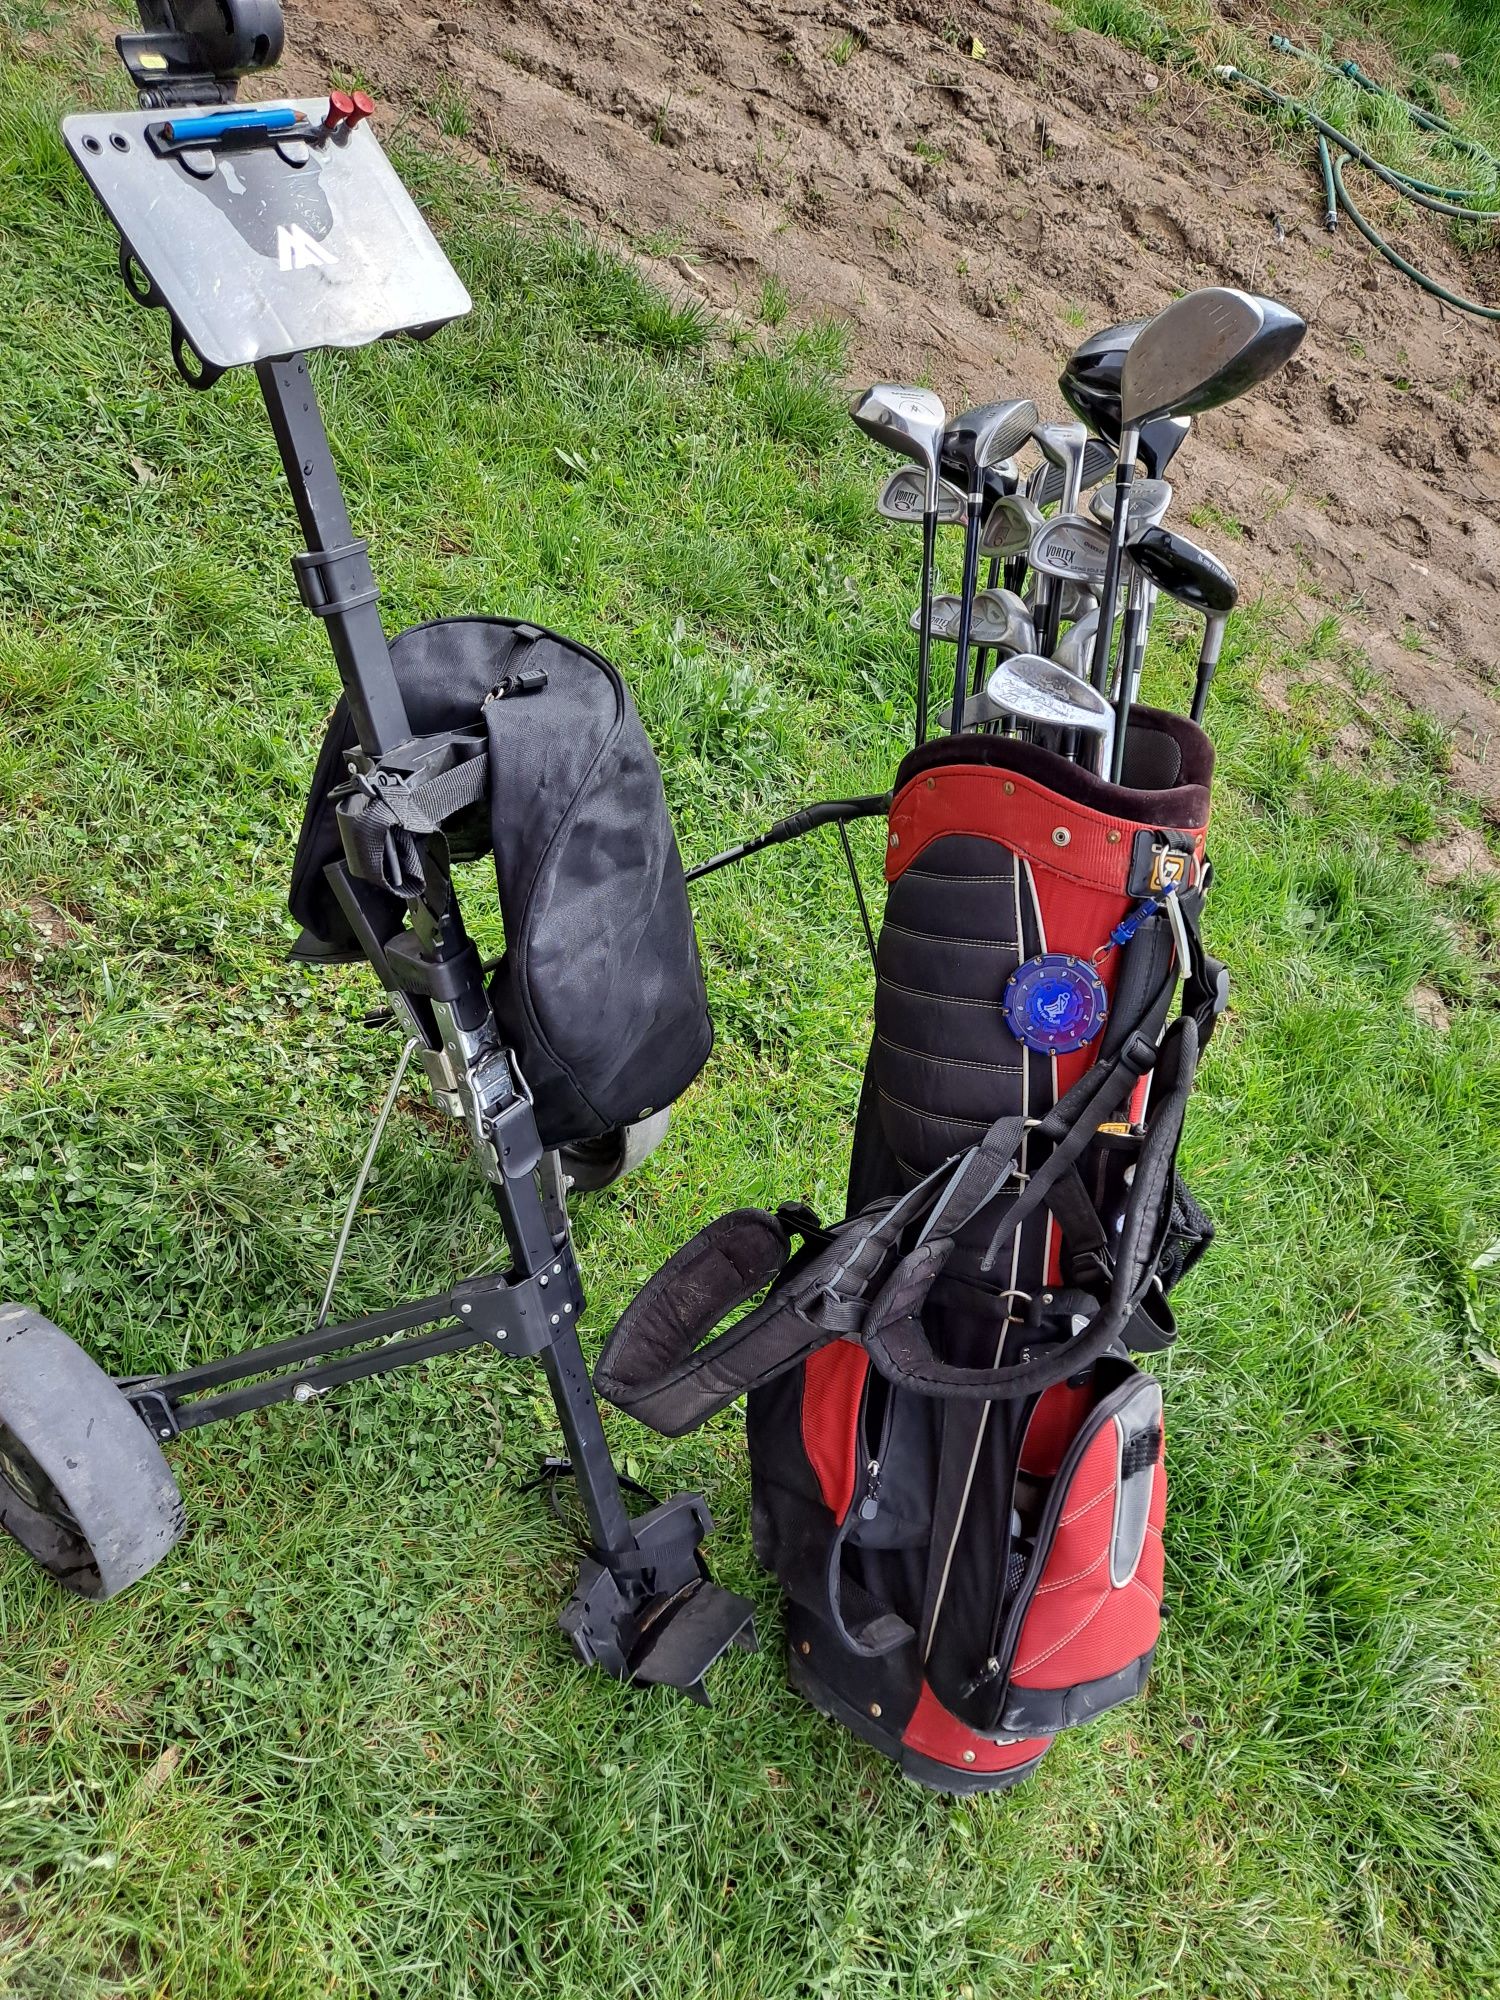 Zestaw do golfa torba kije wózek